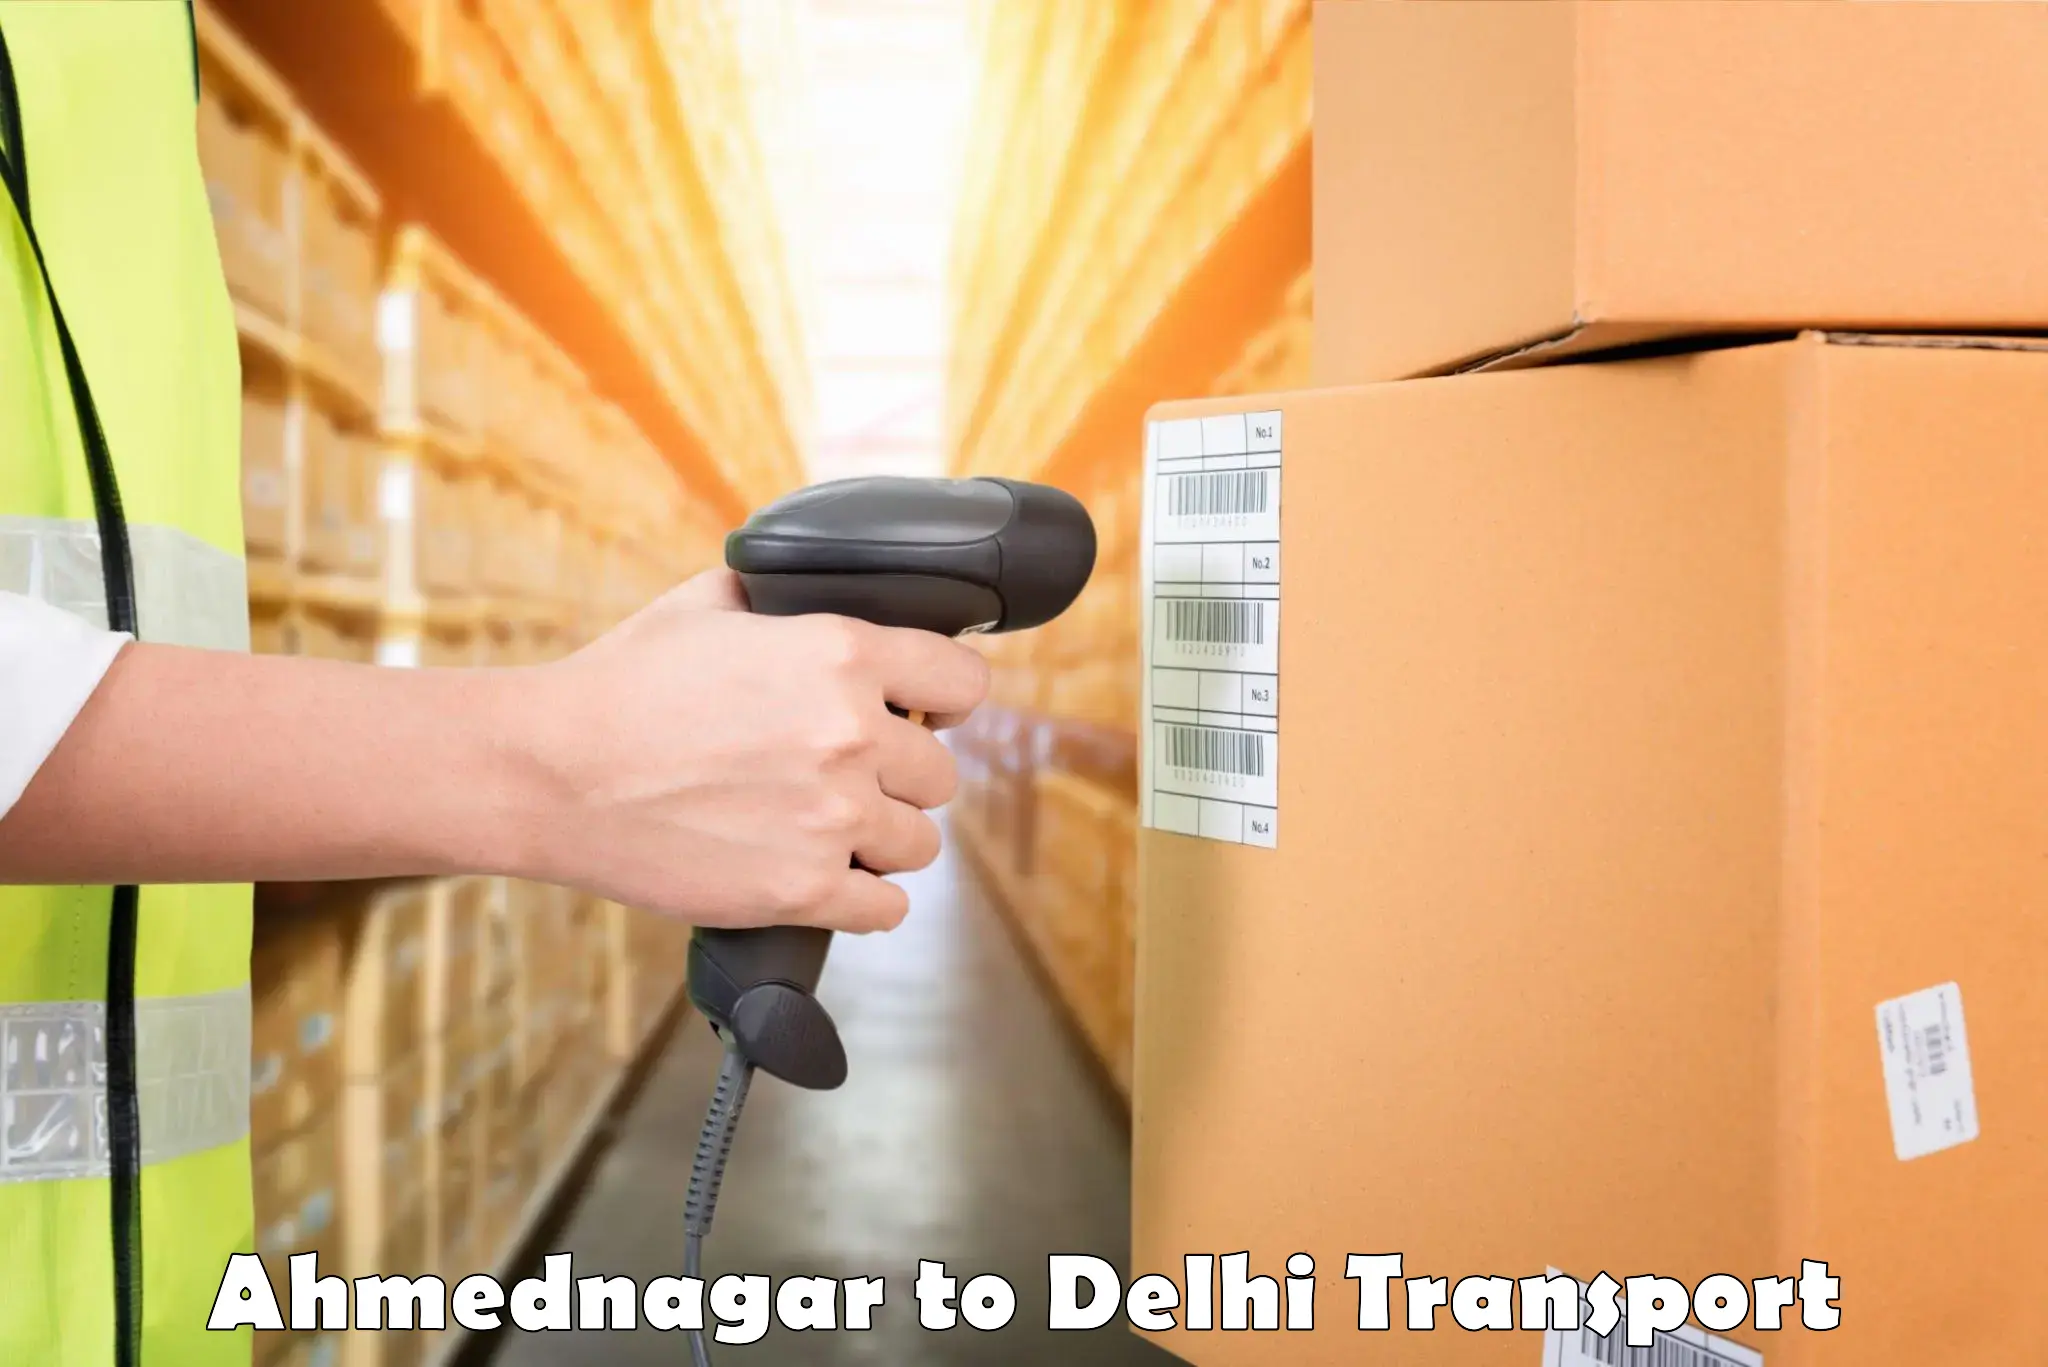 Daily transport service Ahmednagar to IIT Delhi